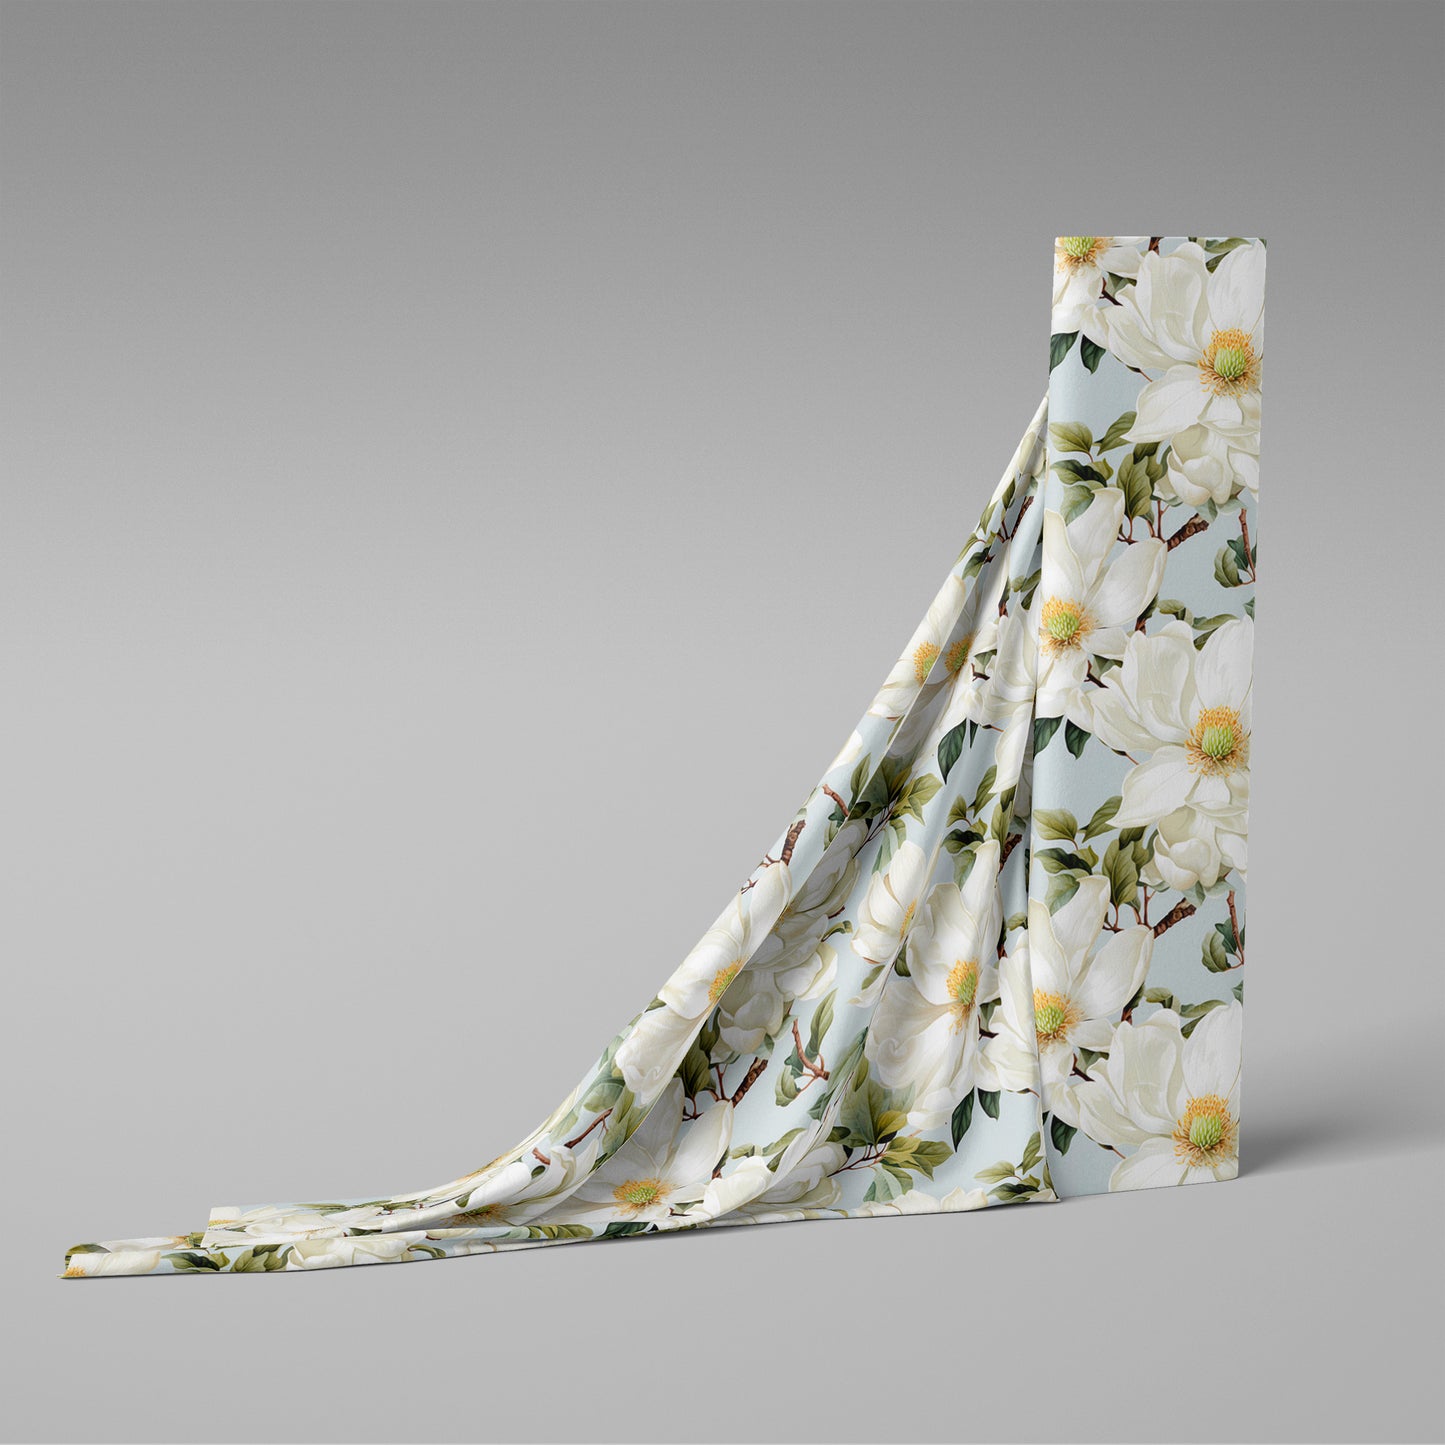 Magnolia Serenade Fabric by Studio Ten Design